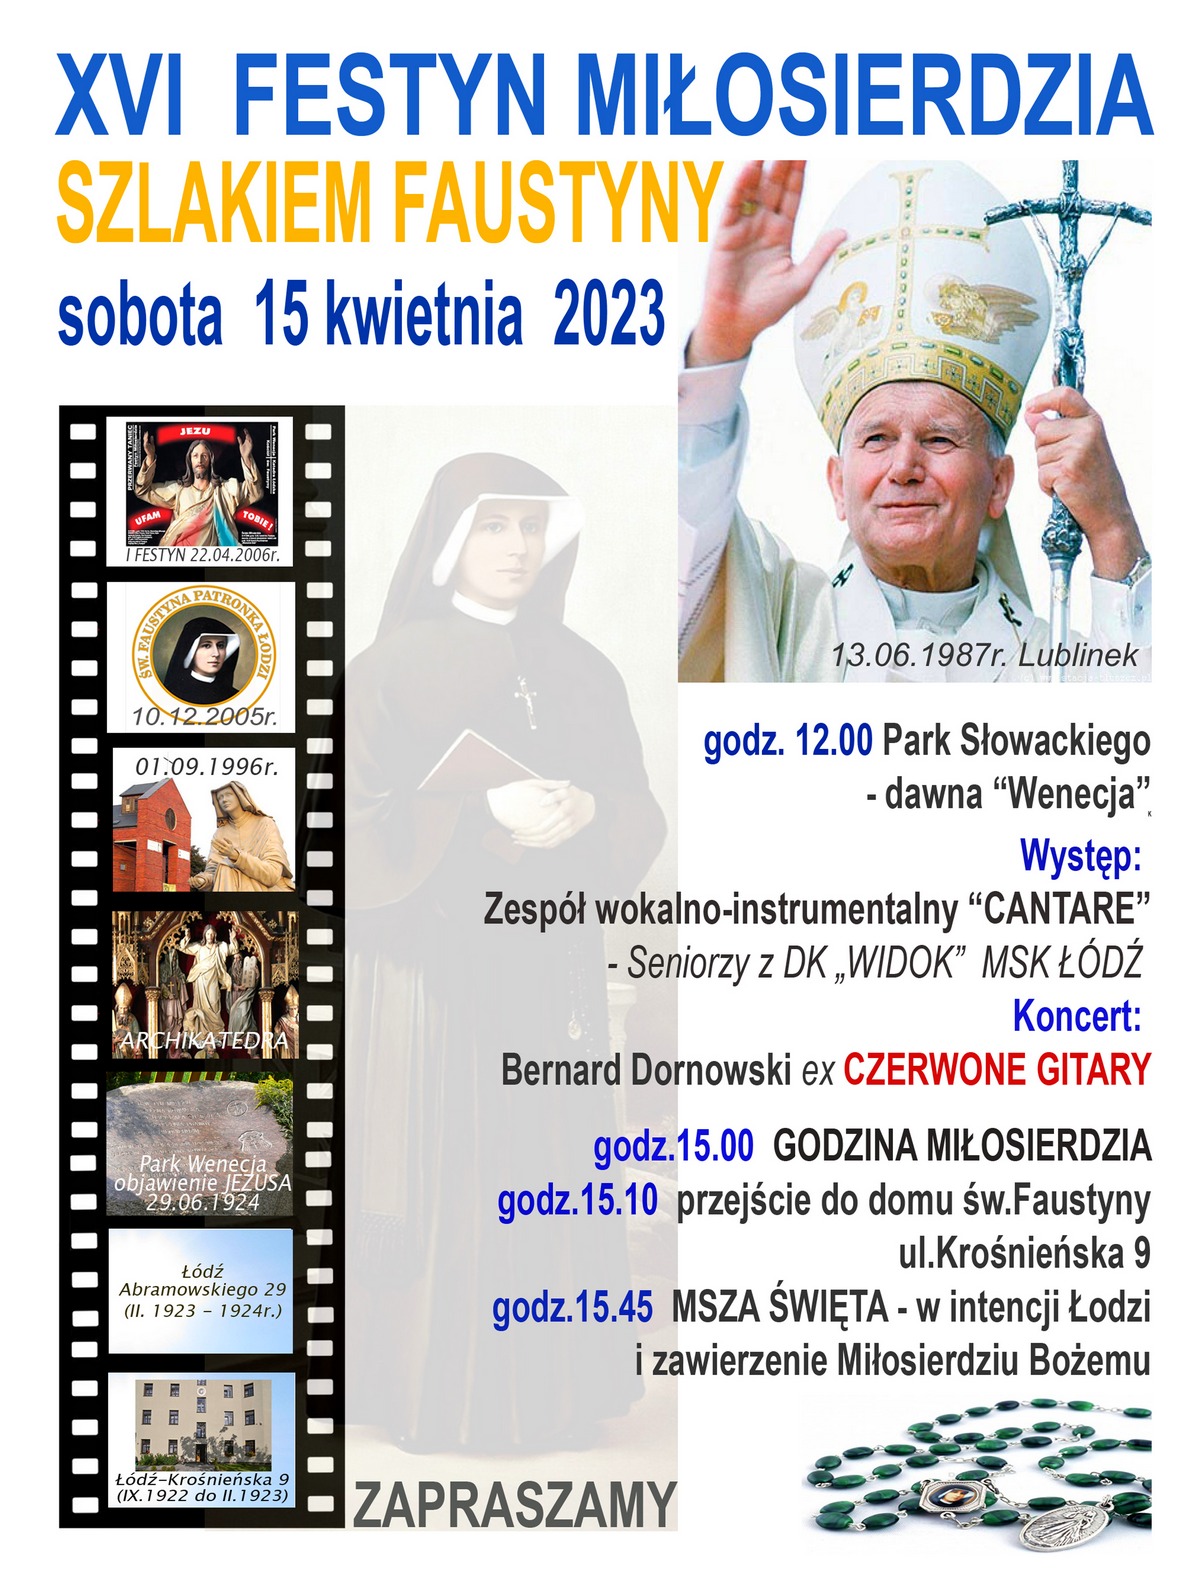 Festyn Miłosierdzia 2023 w Łodzi